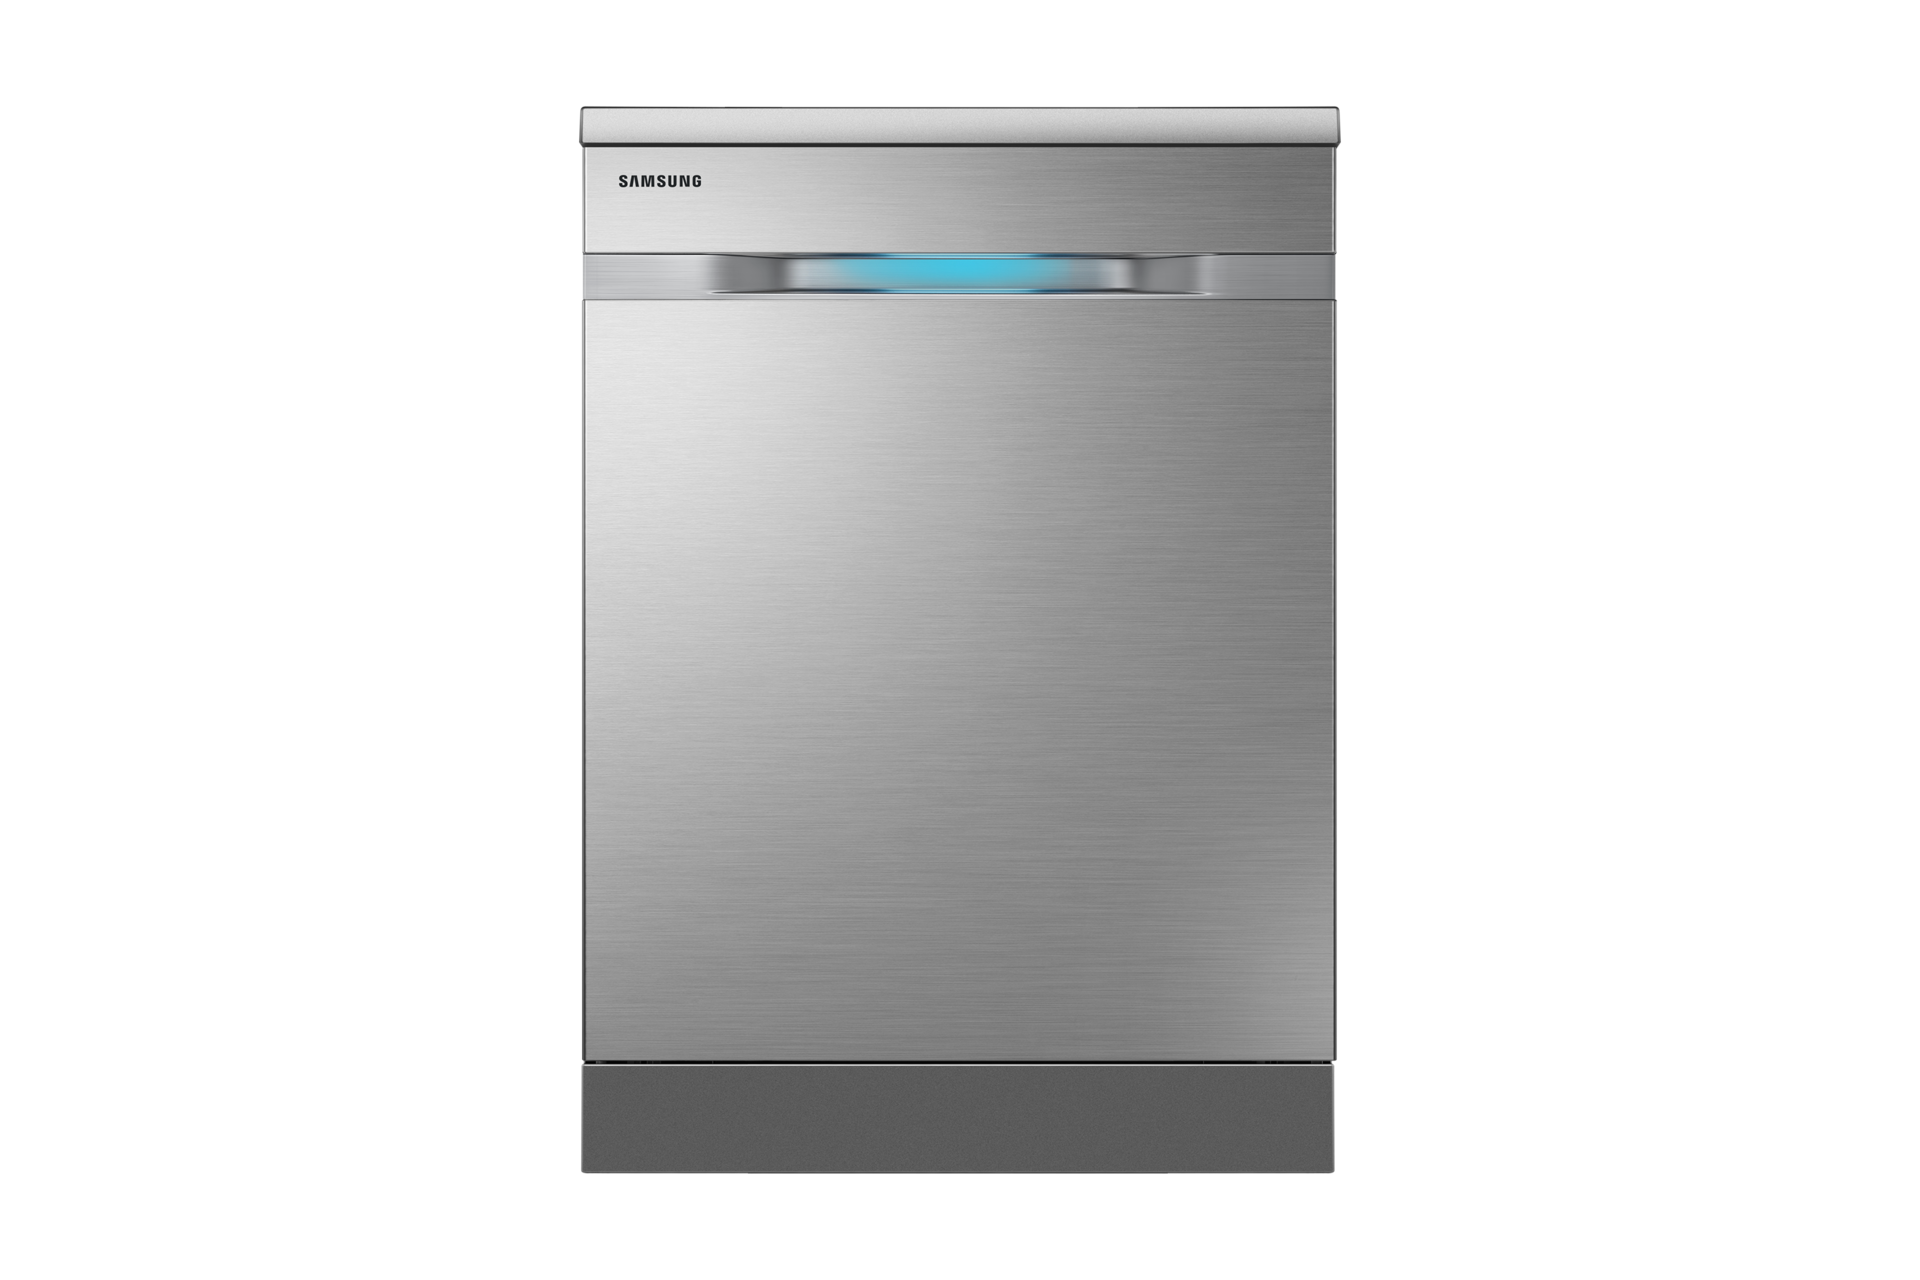 Waterwall Dishwasher (Silver) | Samsung Australia3000 x 2000